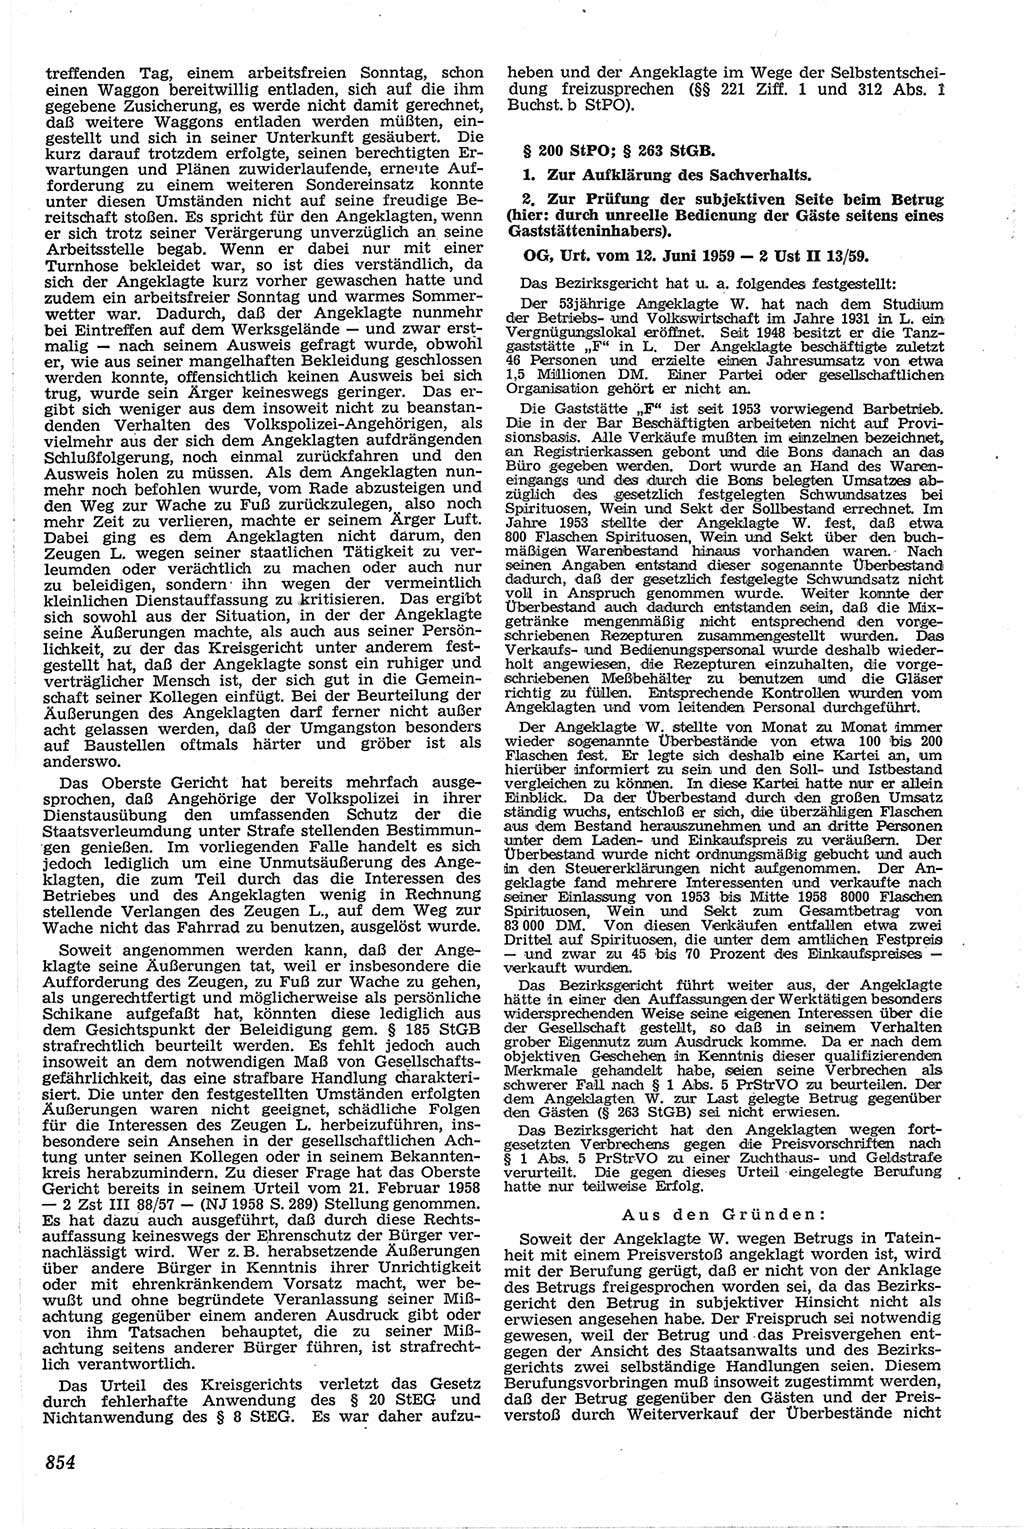 Neue Justiz (NJ), Zeitschrift für Recht und Rechtswissenschaft [Deutsche Demokratische Republik (DDR)], 13. Jahrgang 1959, Seite 854 (NJ DDR 1959, S. 854)